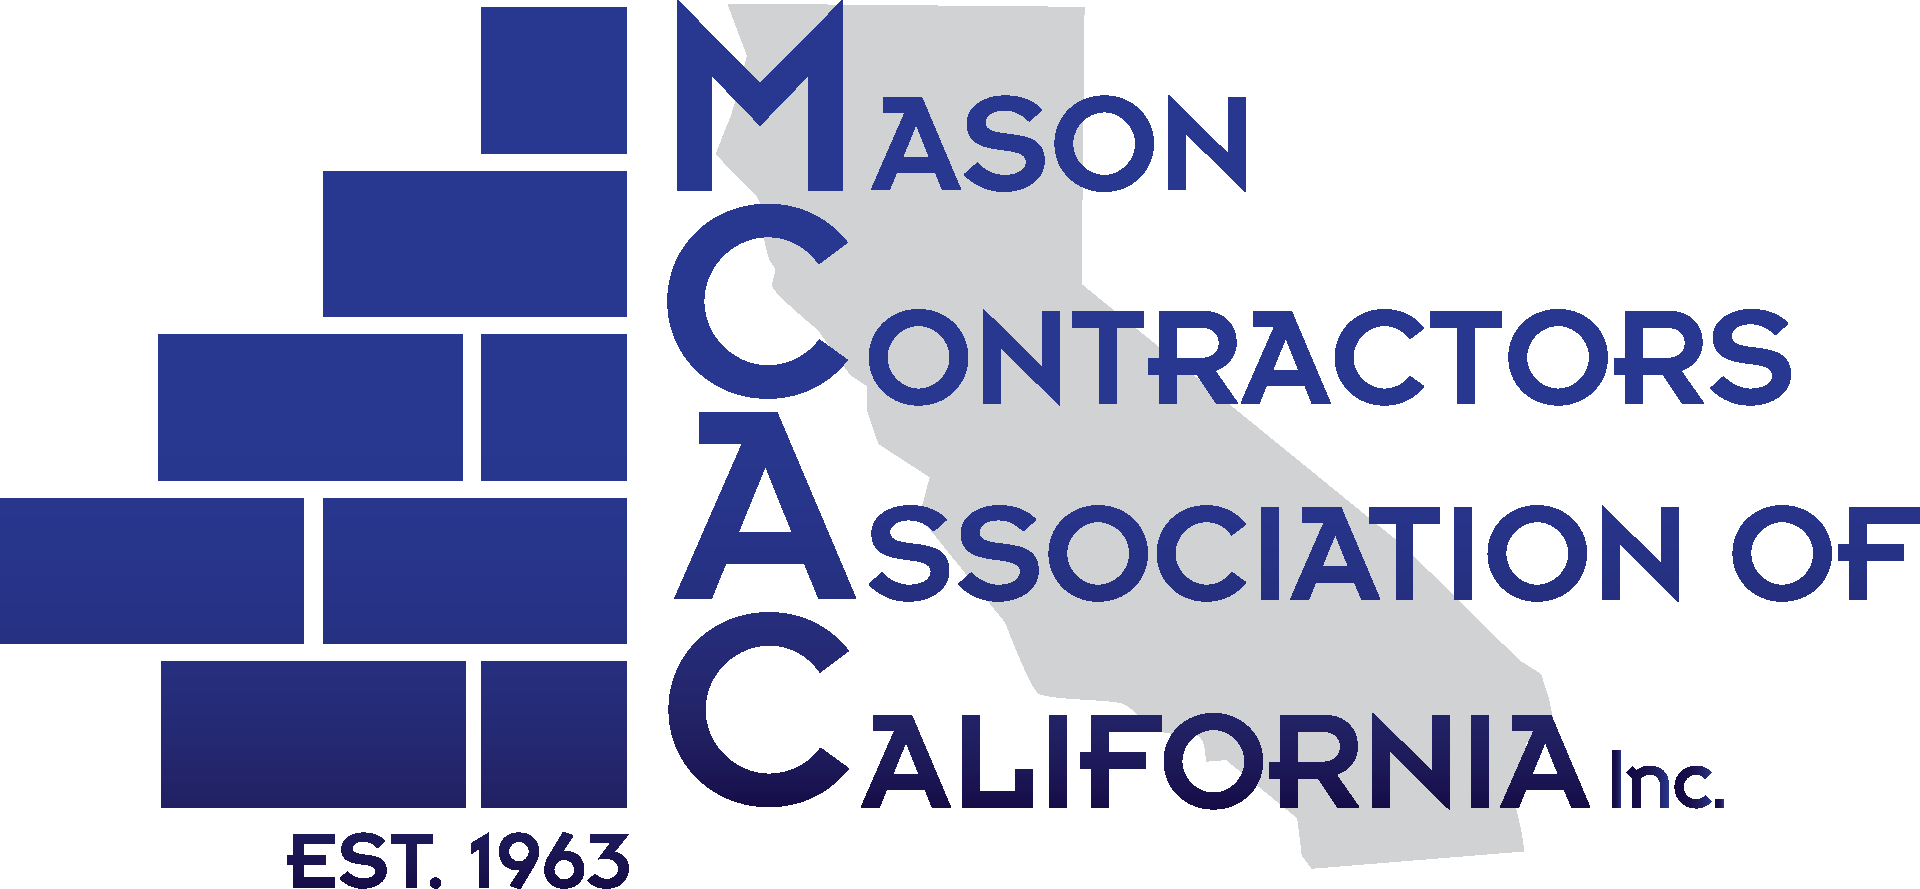 Mason Contractors Association of California, Inc.